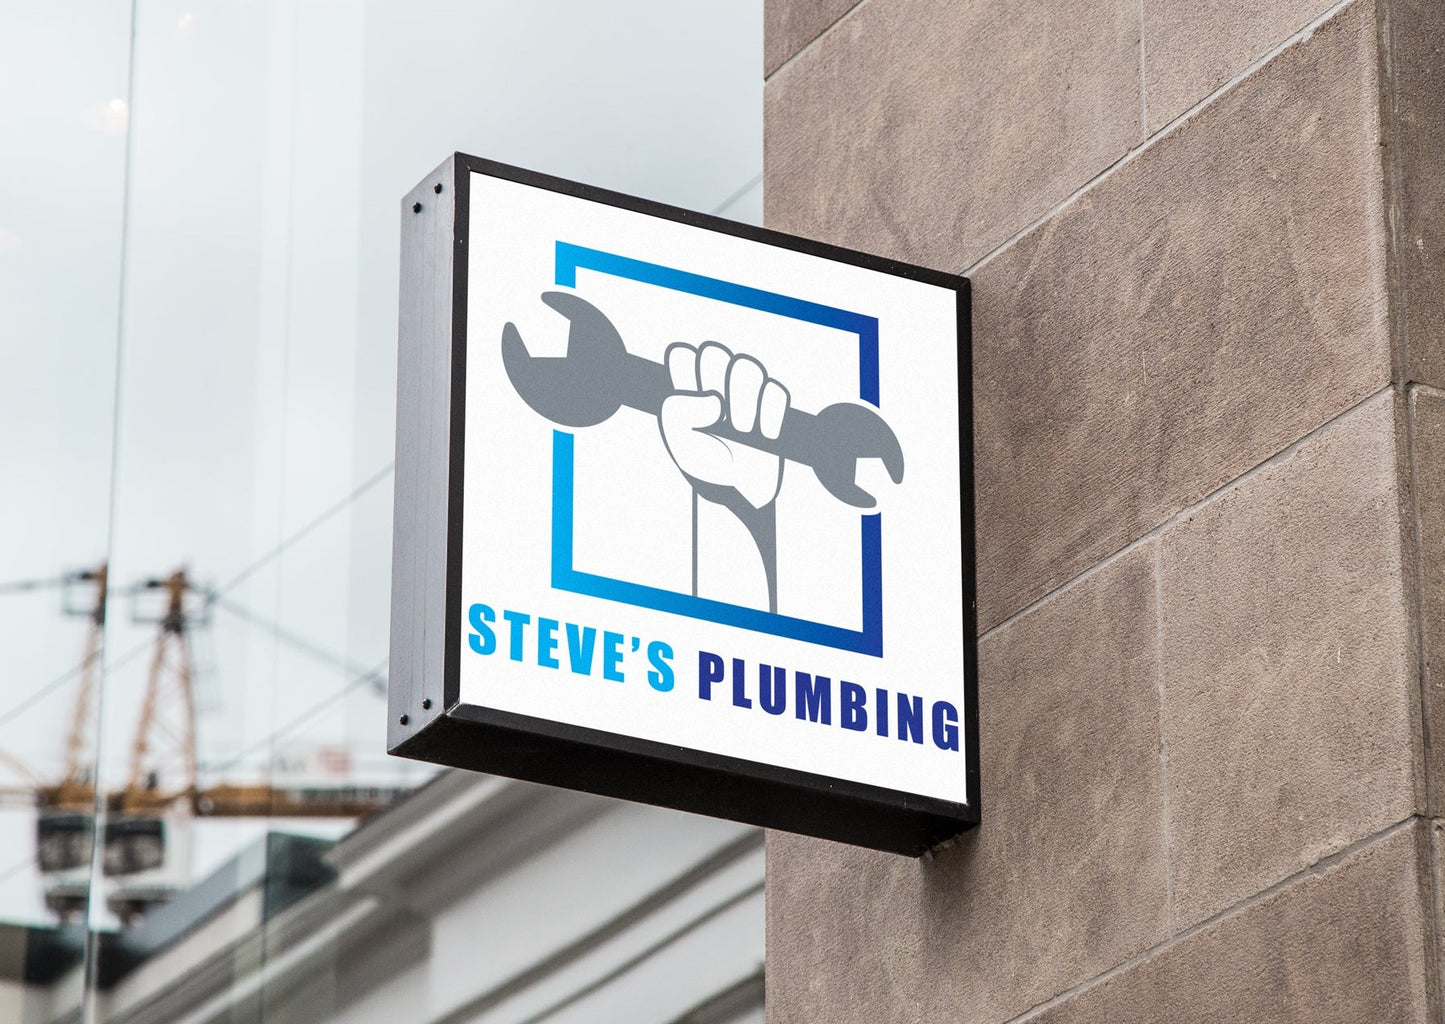 Plumbing Services | Plumbing Business | Plumber Logo | Logo Design | Plumbing Company | Wrench Logo | Water Pipes | Logo